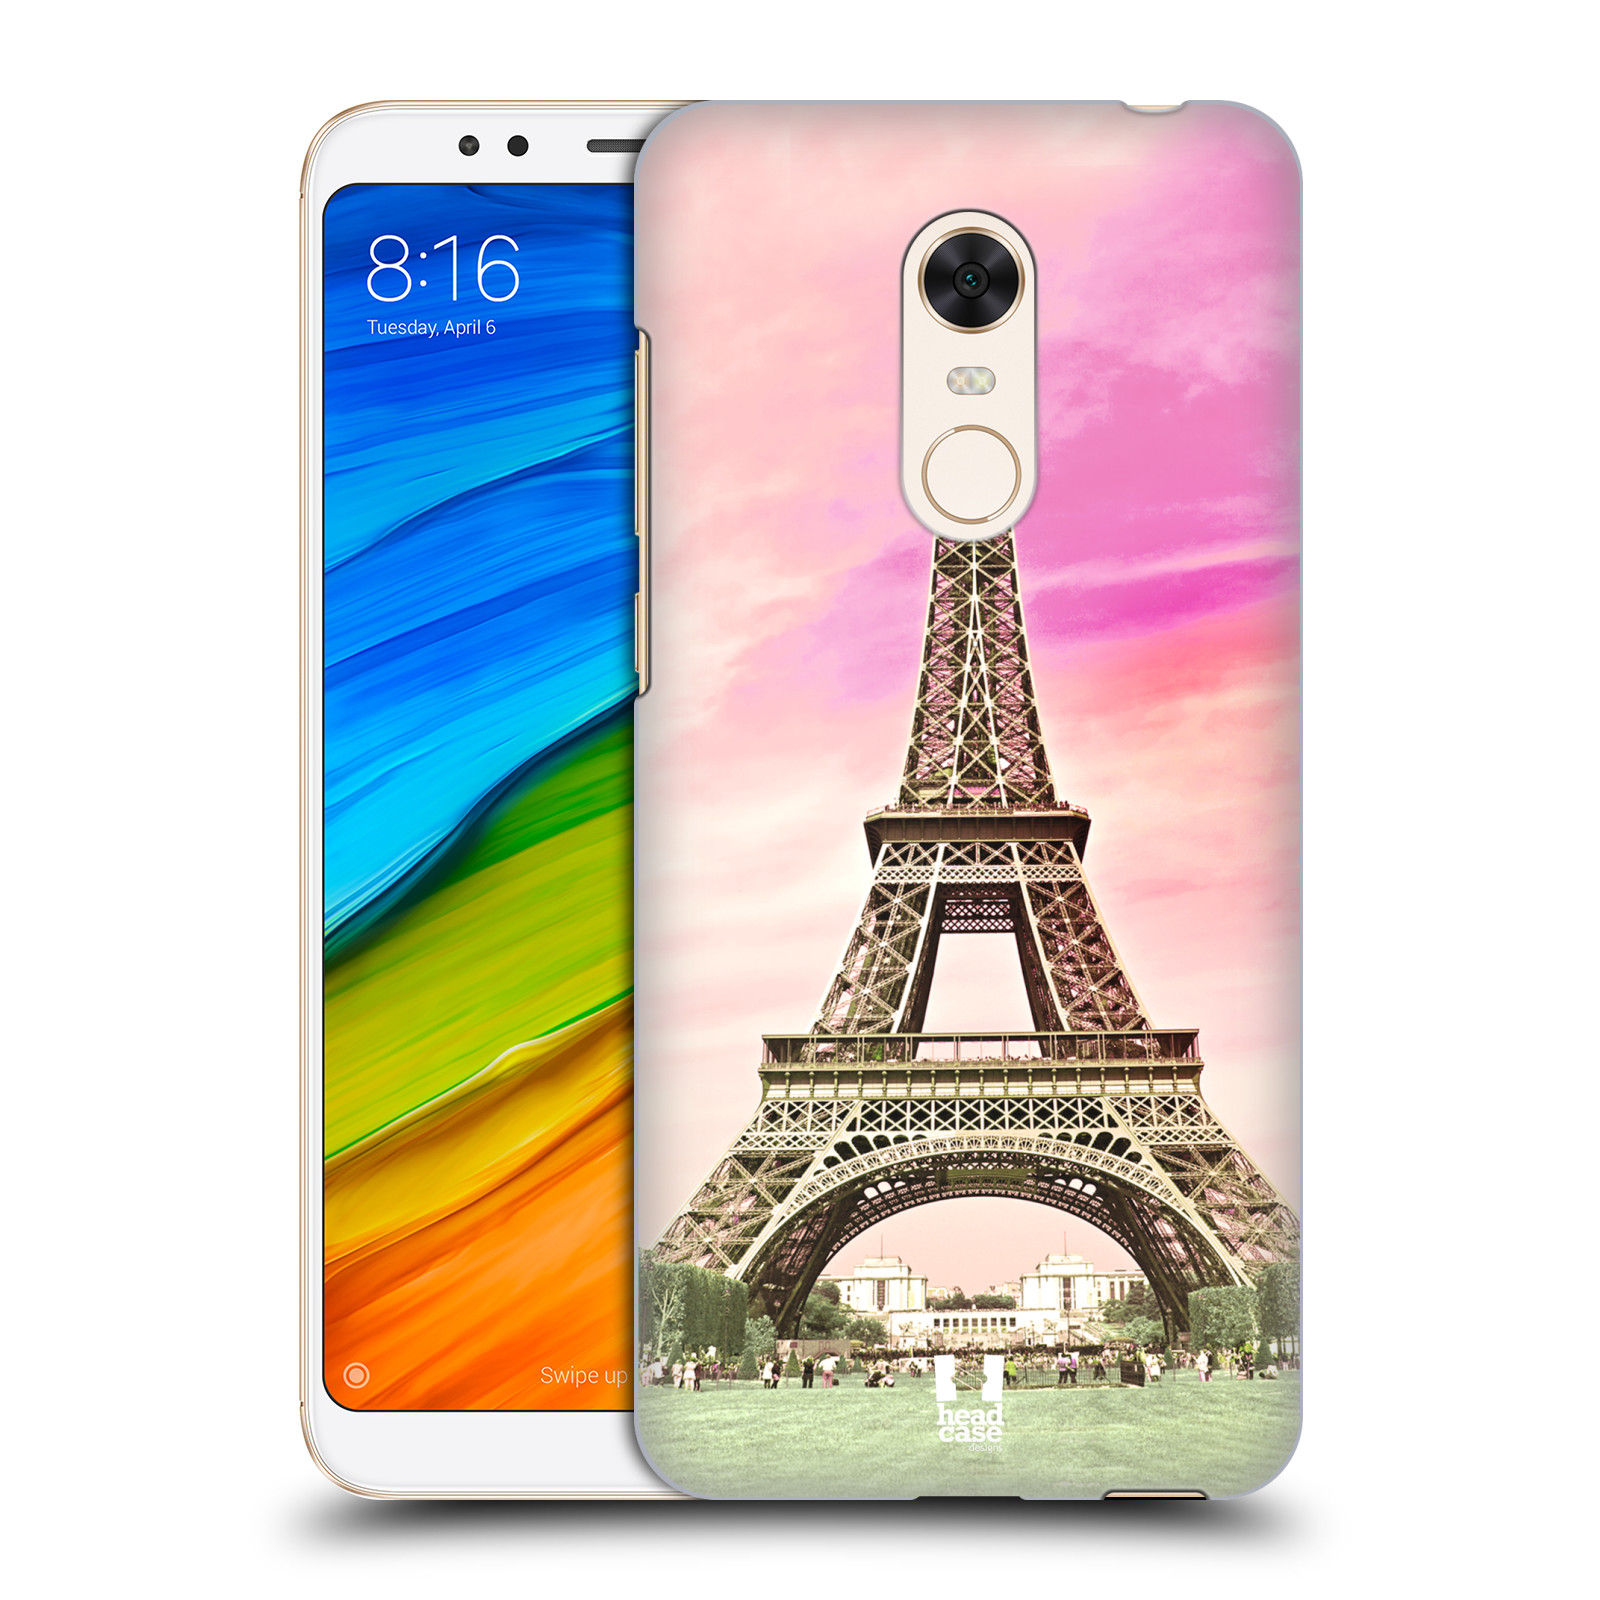 Pouzdro na mobil Xiaomi Redmi 5 PLUS (REDMI 5+) - HEAD CASE - historická místa Eiffelova věž Paříž